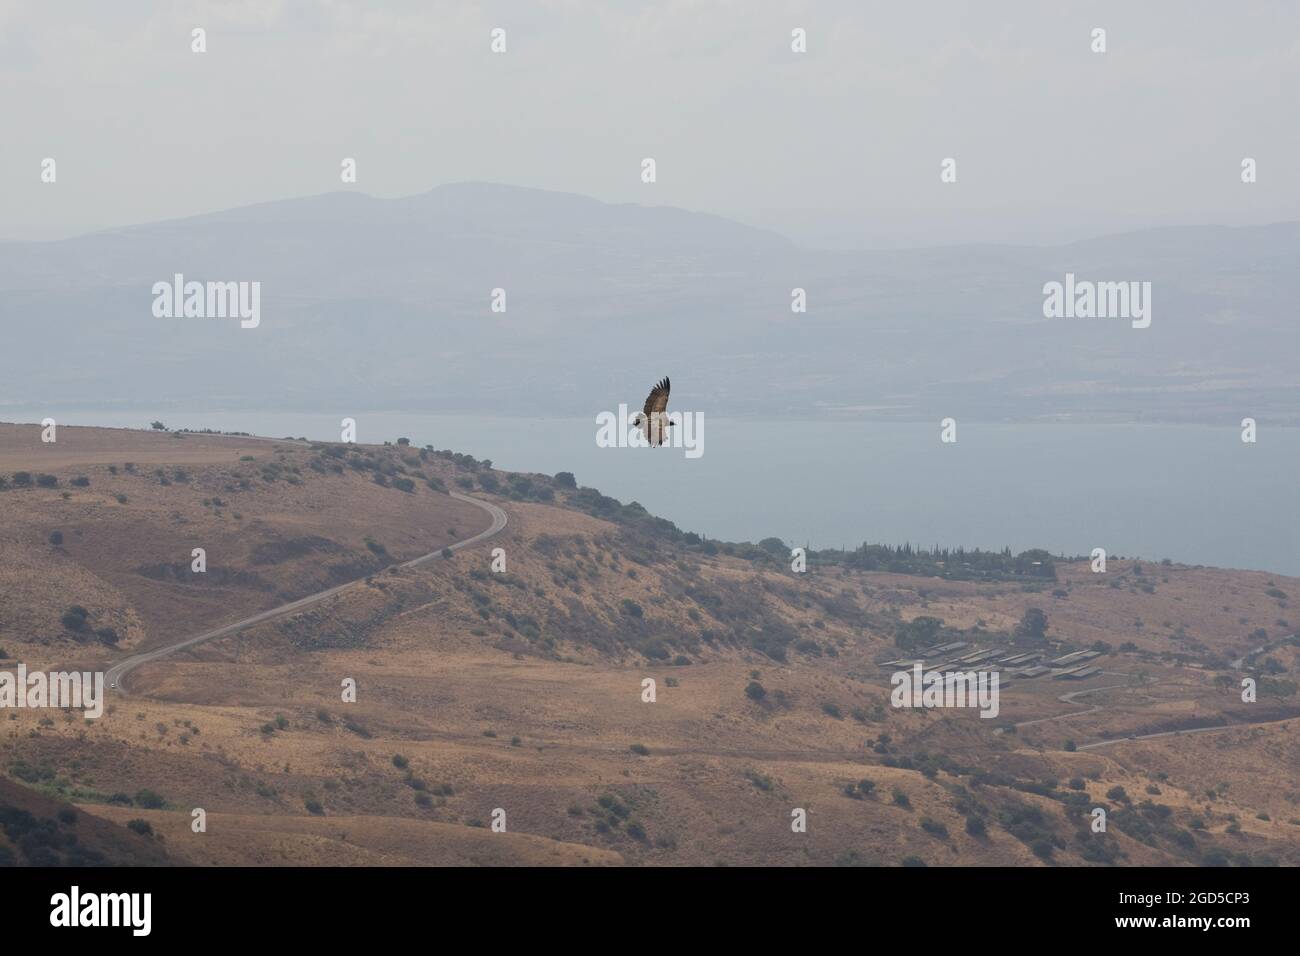 Gänsegeier (Gyps fulvus) im Flug. Fotografiert auf dem Berg Arbel das Galiläische Meer im Hintergrund Stockfoto